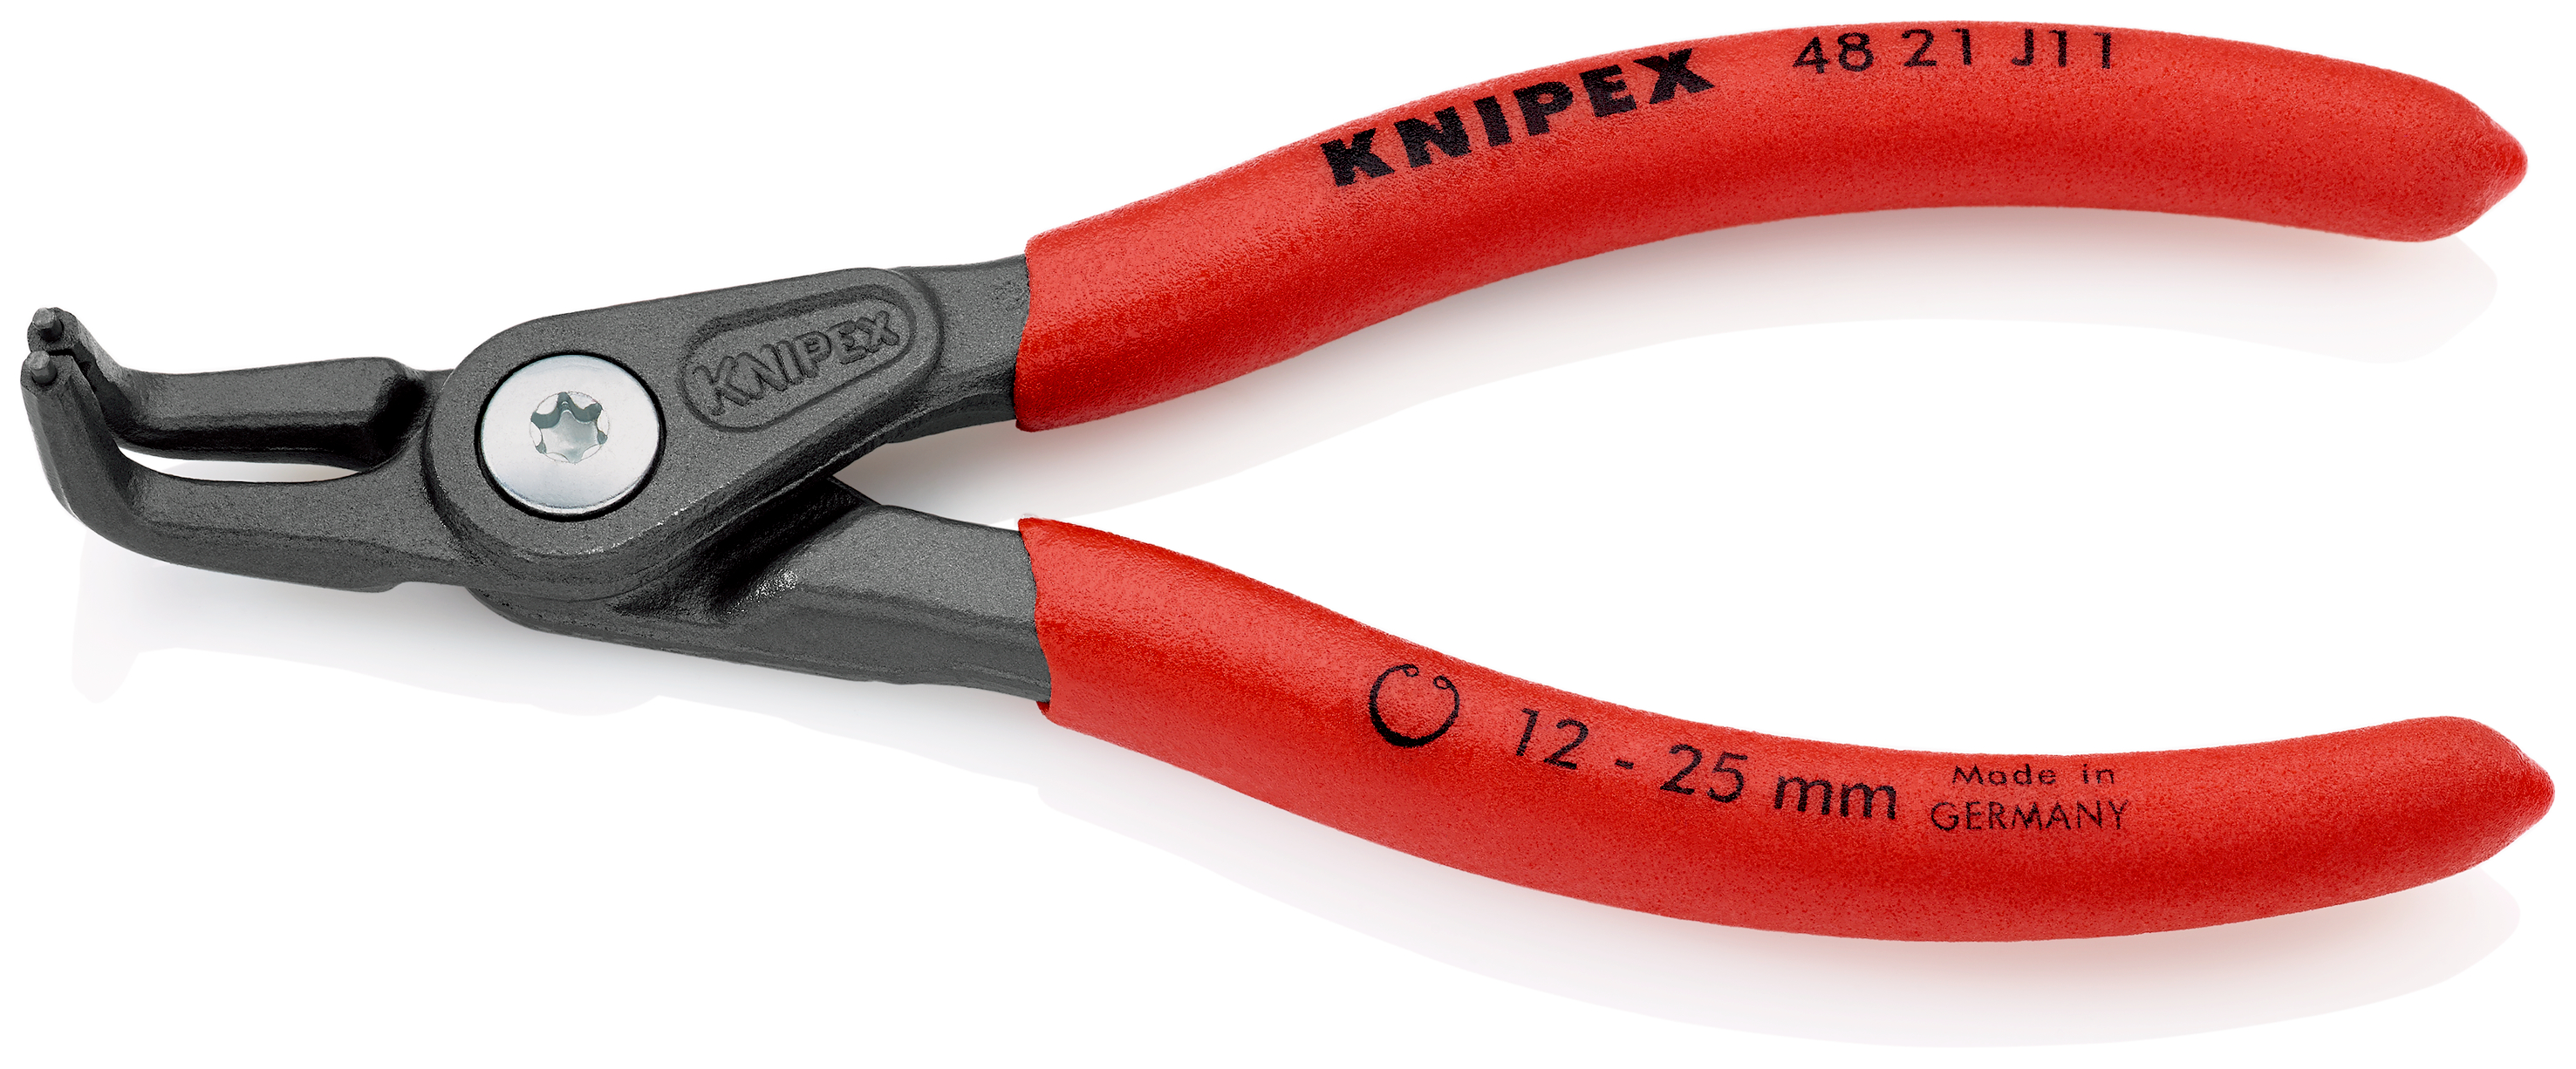 Knipex 4821J11 Cleste pentru inele de siguranta de interior, lungime 130 mm